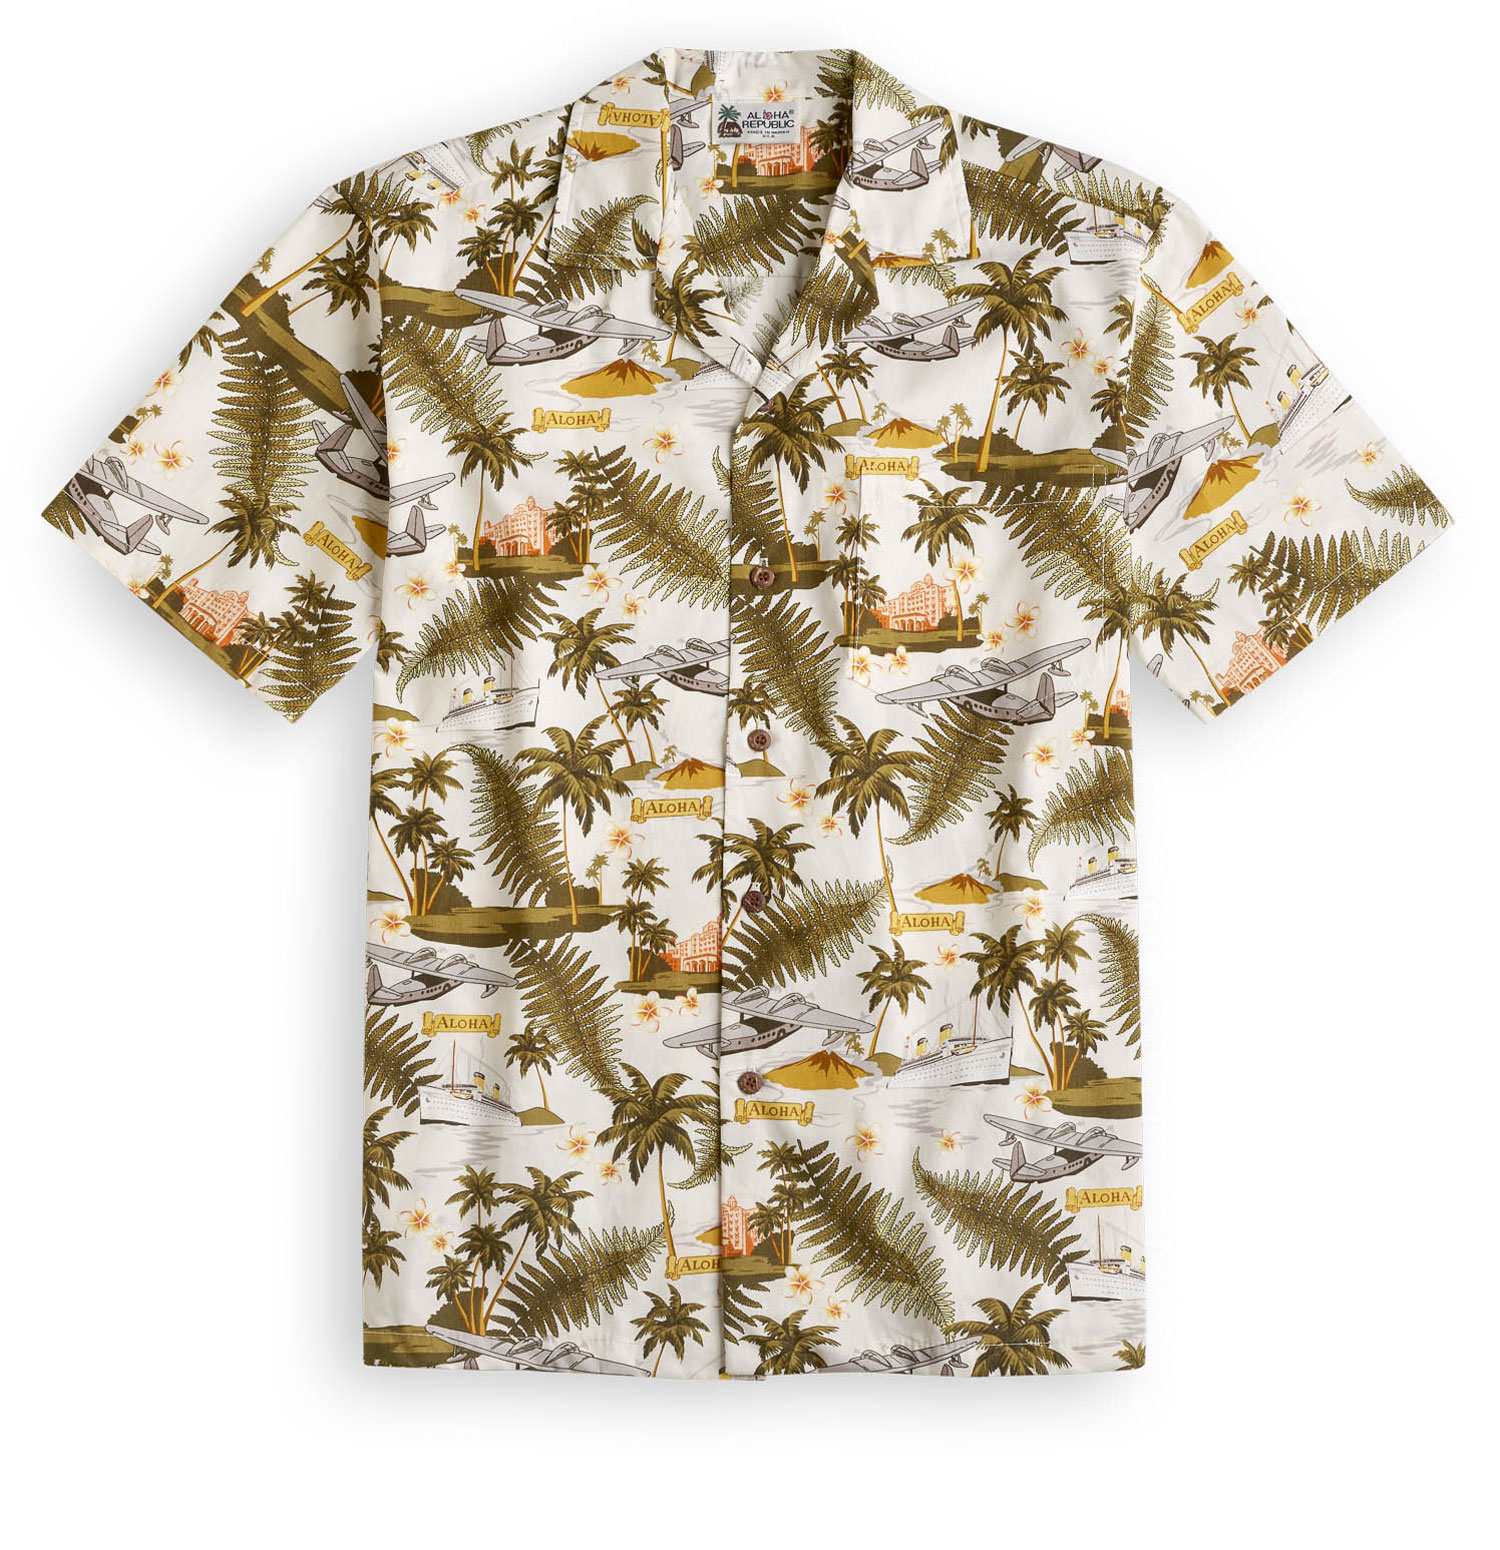 Arrival Hawaii - Hawaiian Shirt Shop UK